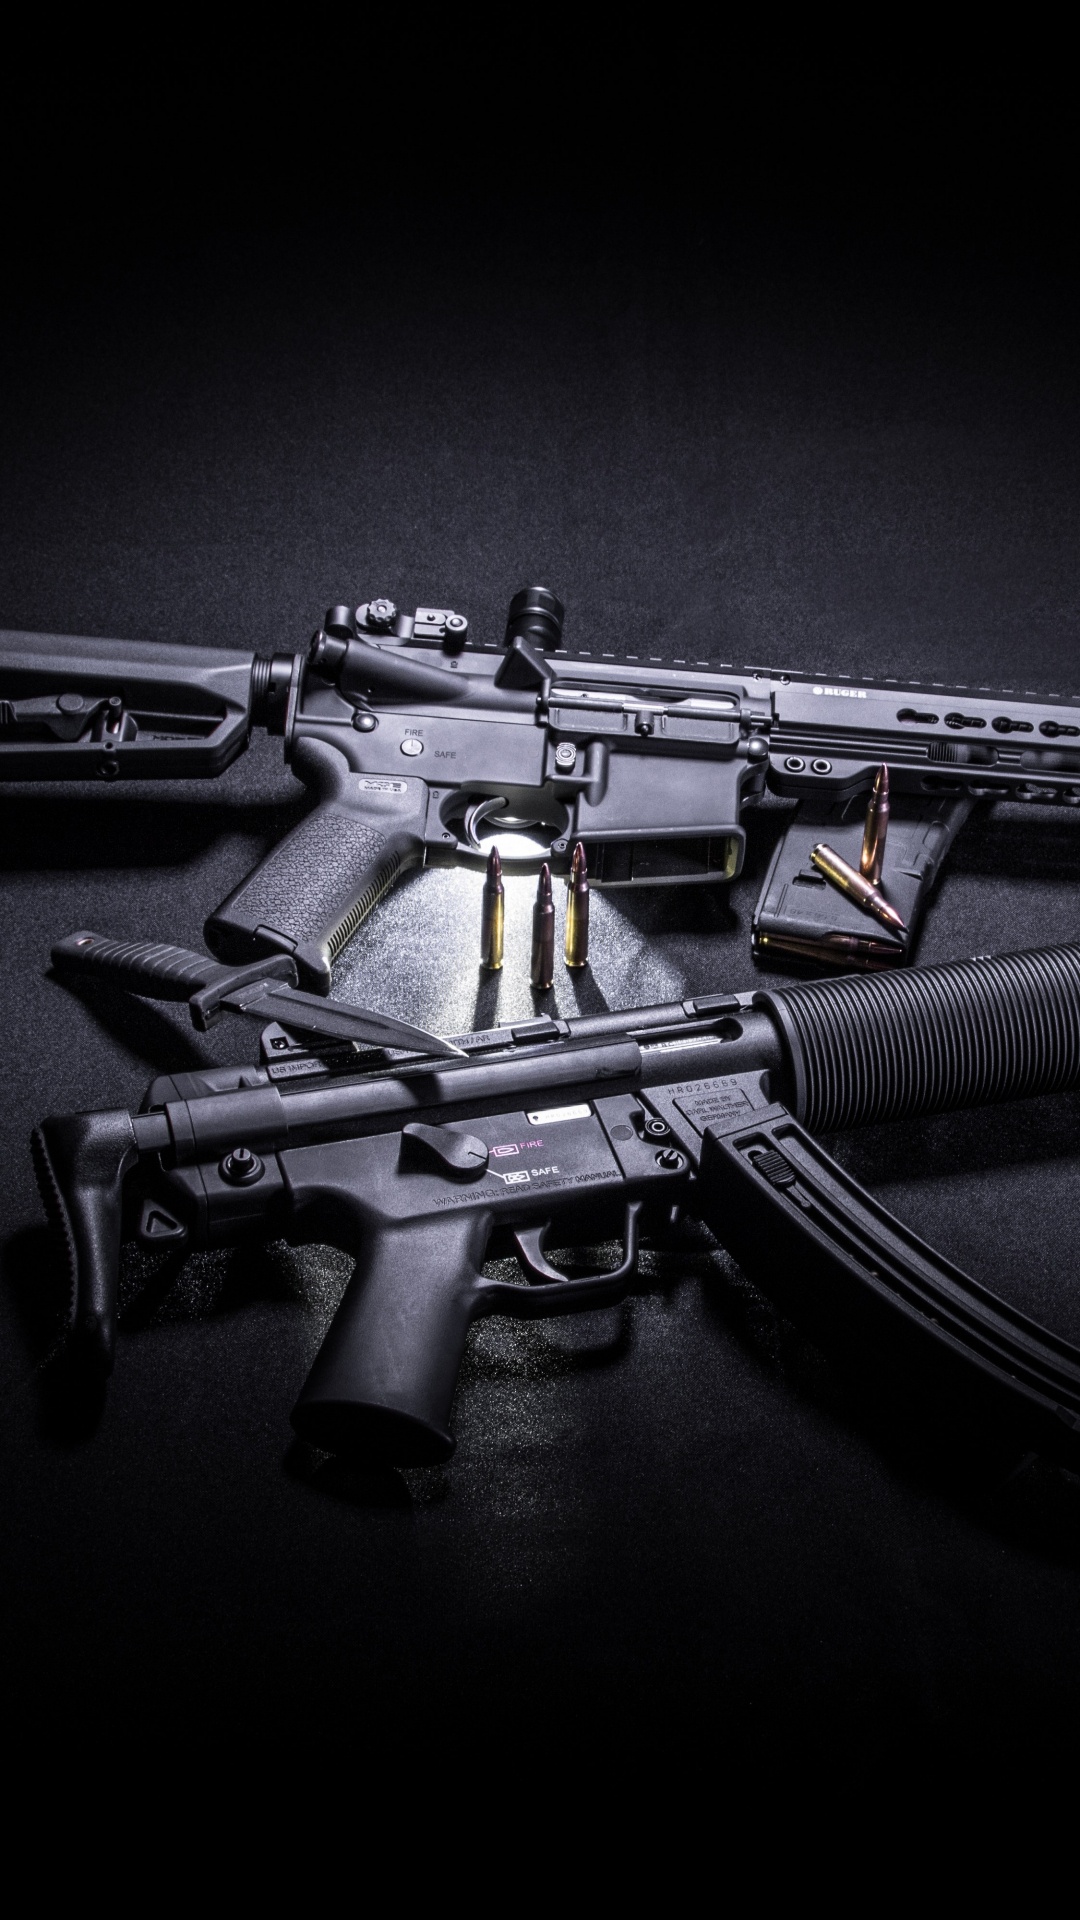 Feuerwaffe, STURMGEWEHR, Trigger, Gun Barrel, Maschinengewehr. Wallpaper in 1080x1920 Resolution